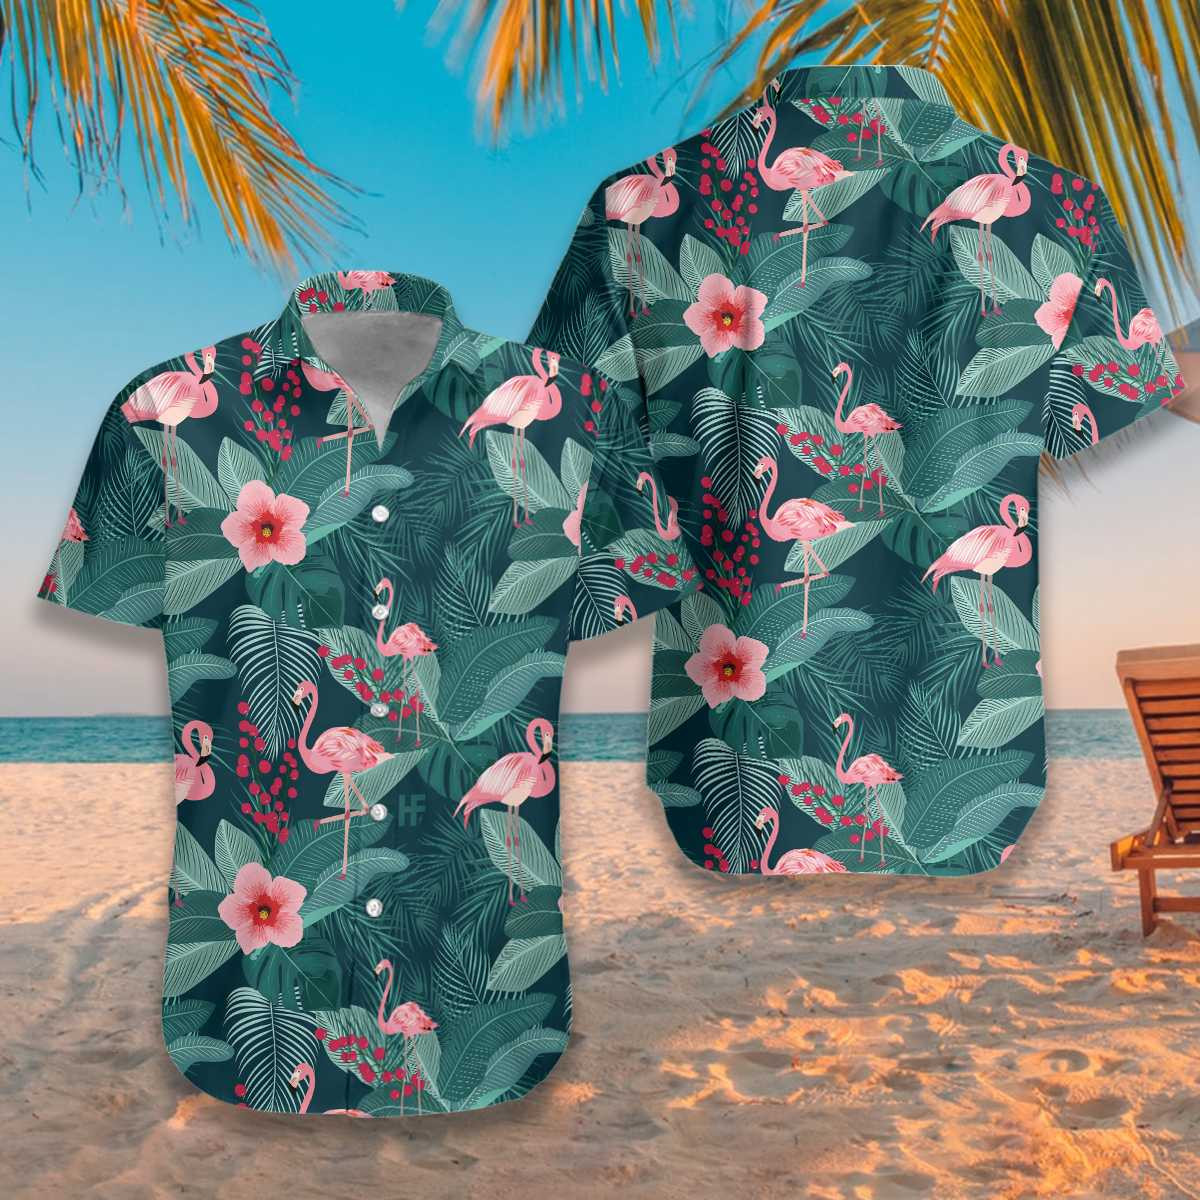 Flamingo Hawaiian Shirt Tropical Tropical Leaves Palm Hawaiian Shirt For Men Women